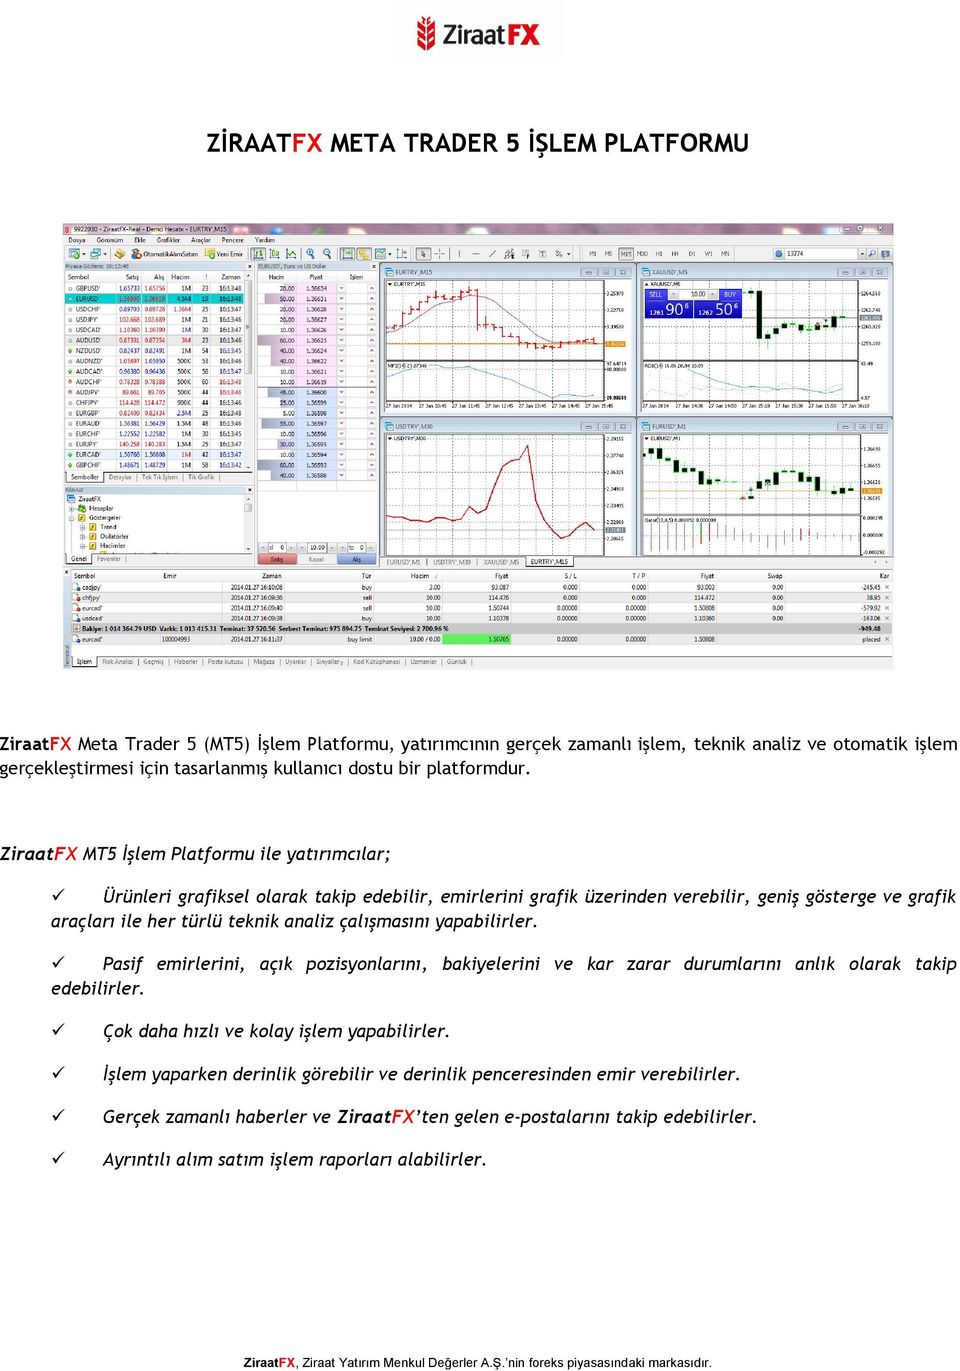 ZiraatFX MT5 İşlem Platformu ile yatırımcılar; Ürünleri grafiksel olarak takip edebilir, emirlerini grafik üzerinden verebilir, geniş gösterge ve grafik araçları ile her türlü teknik analiz